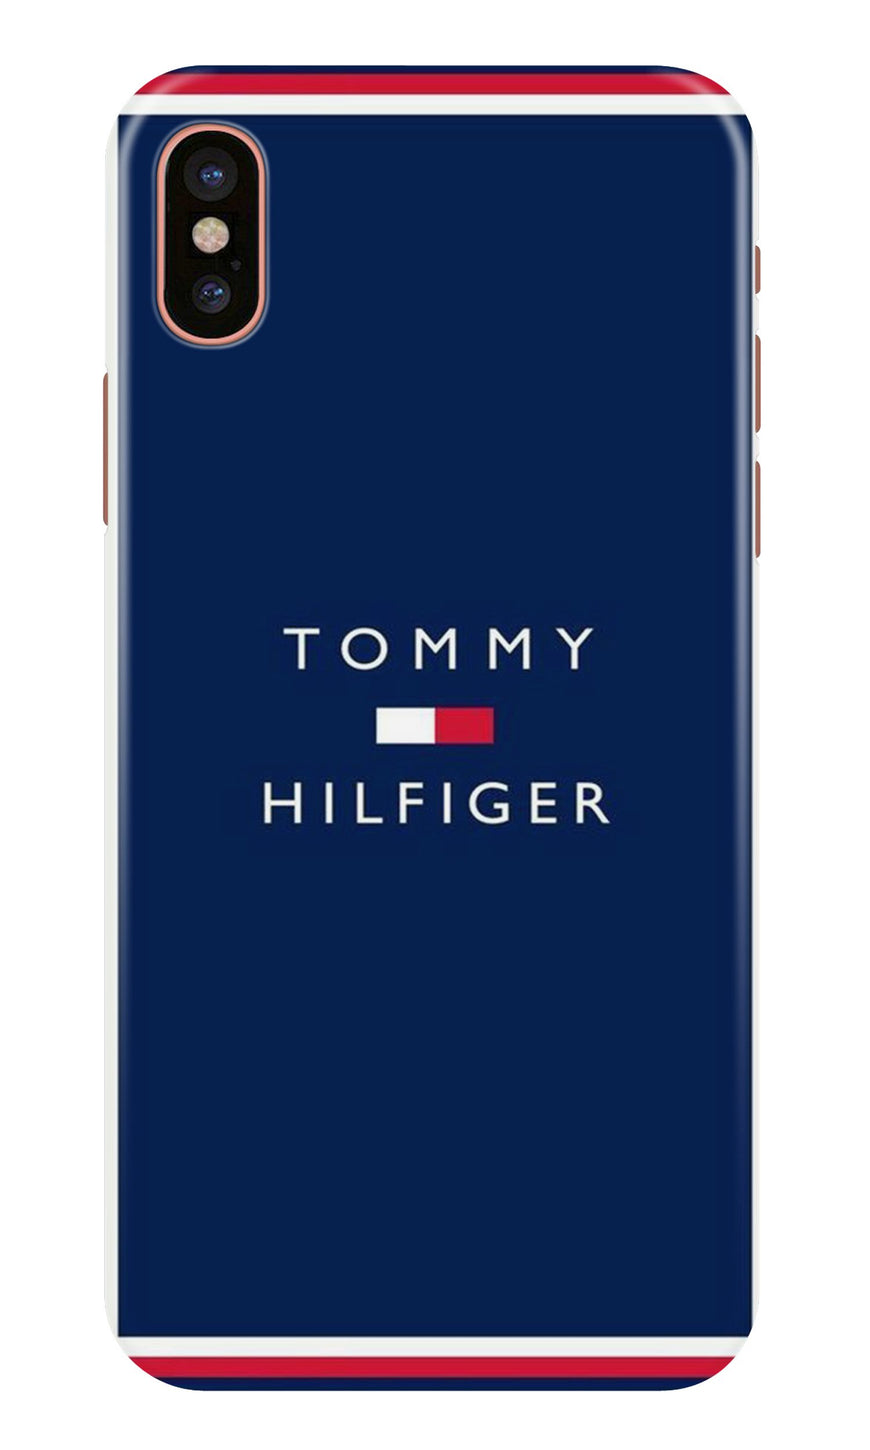 Tommy Hilfiger Case for iPhone Xr (Design No. 275)